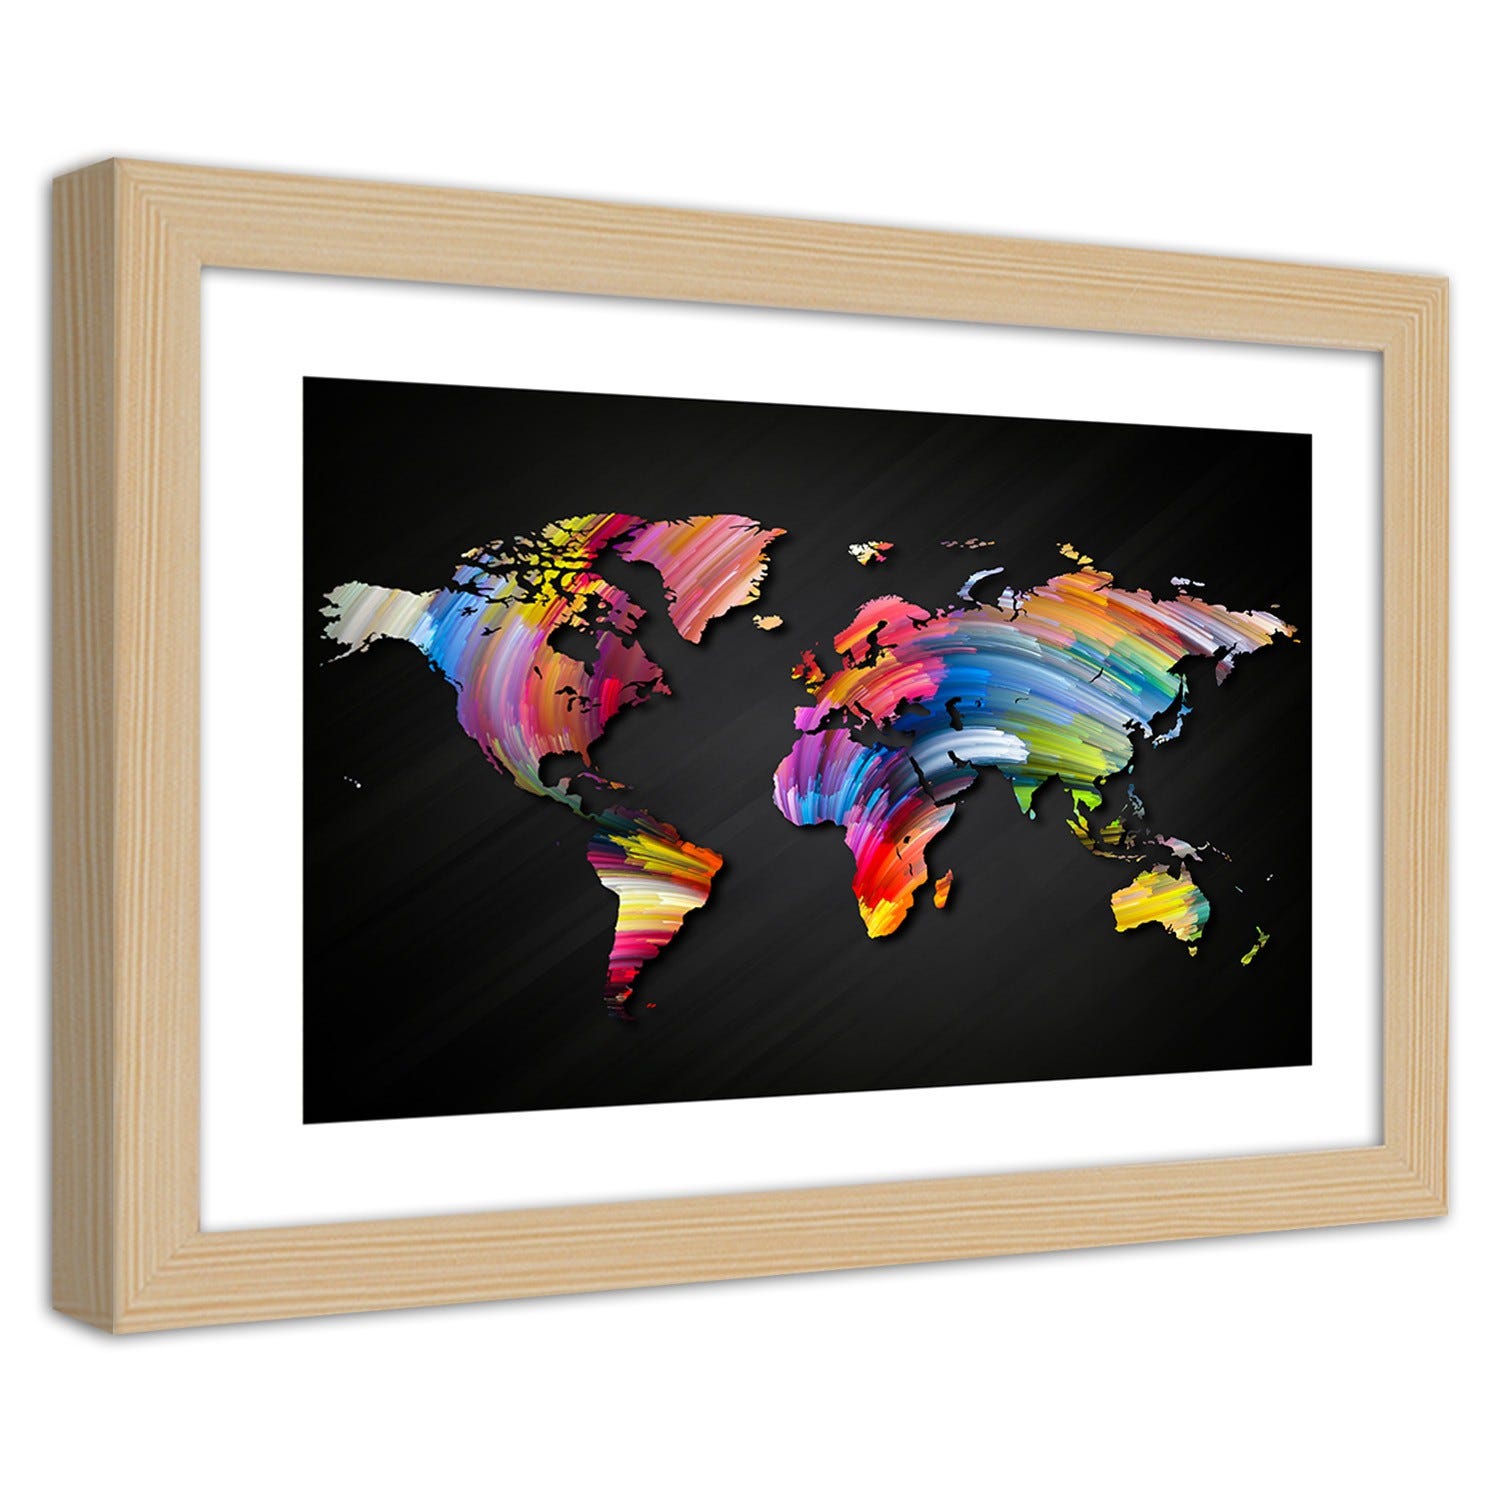 Quadro con cornice, Mappa del mondo in diversi colori - 45x30